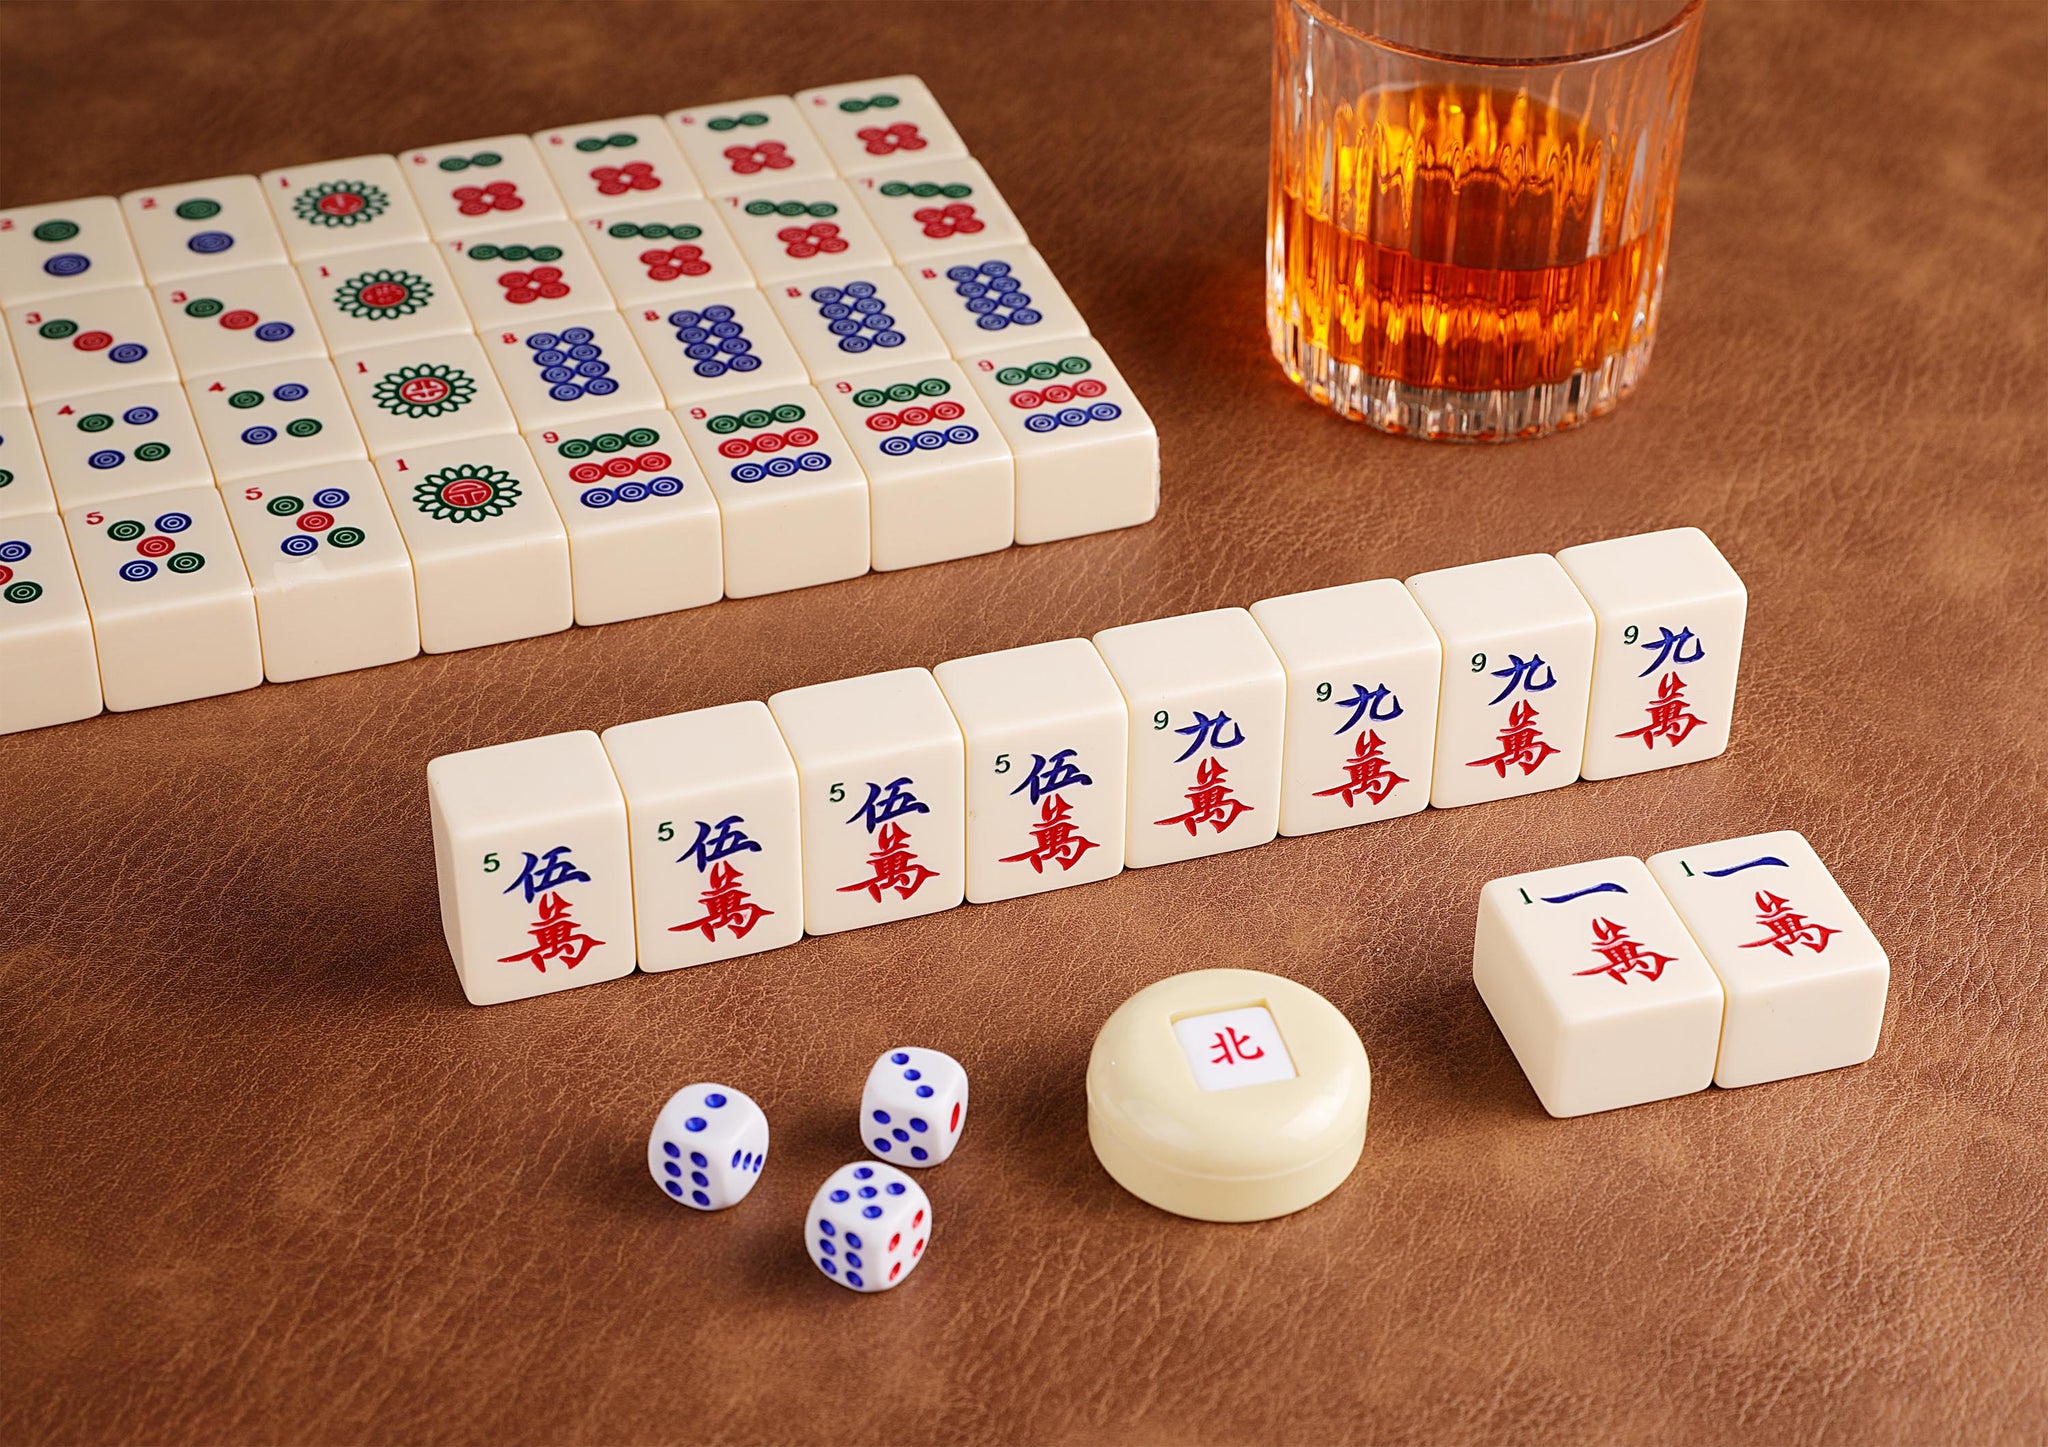 Mahjong Tiles by Cao Yulong